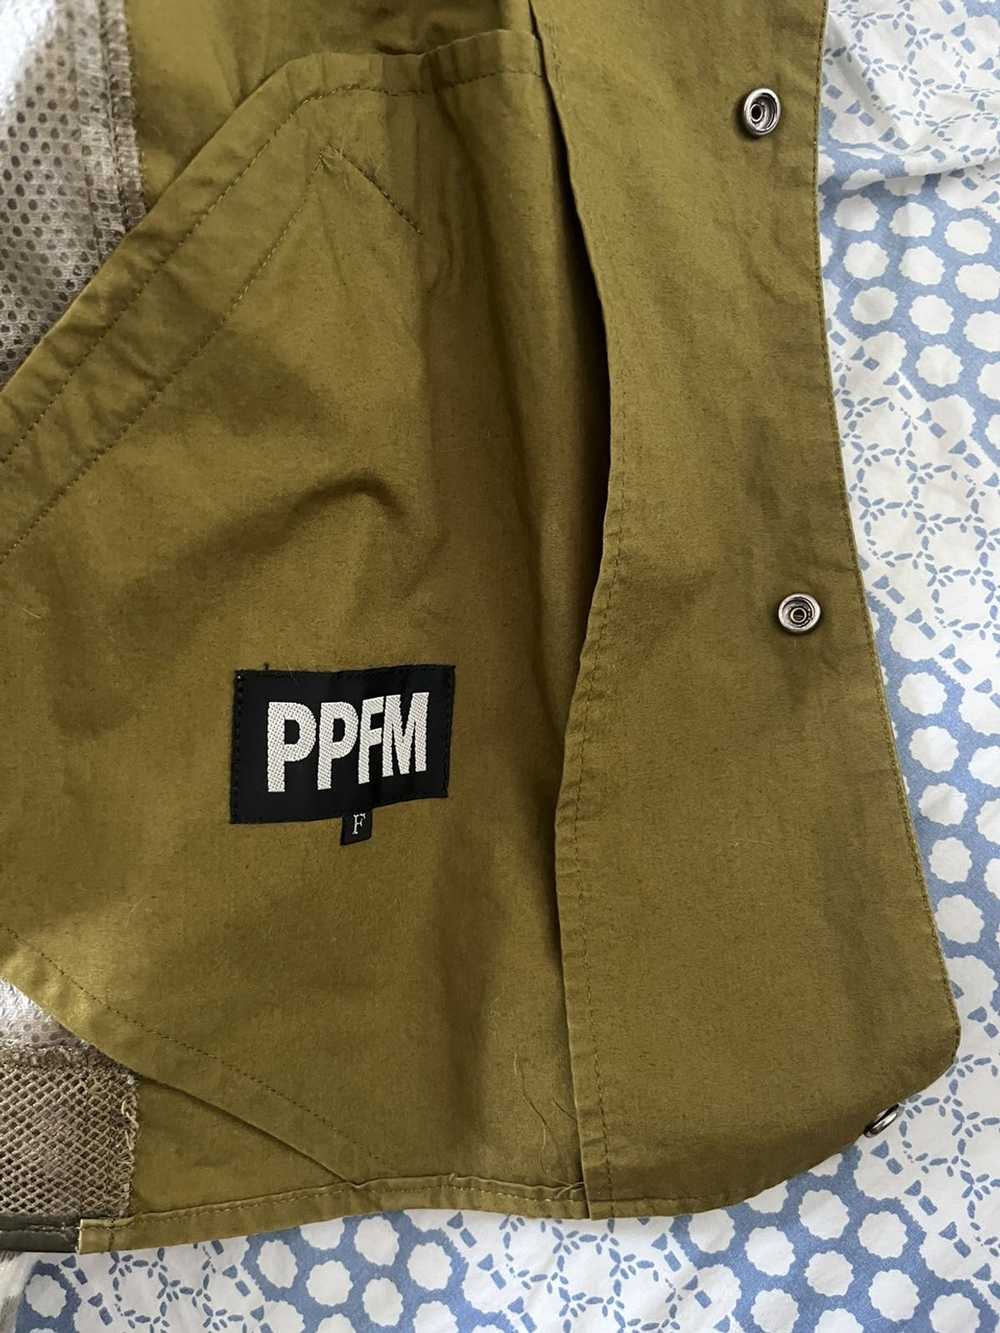 PPFM PPFM Button Up Shirt - image 3